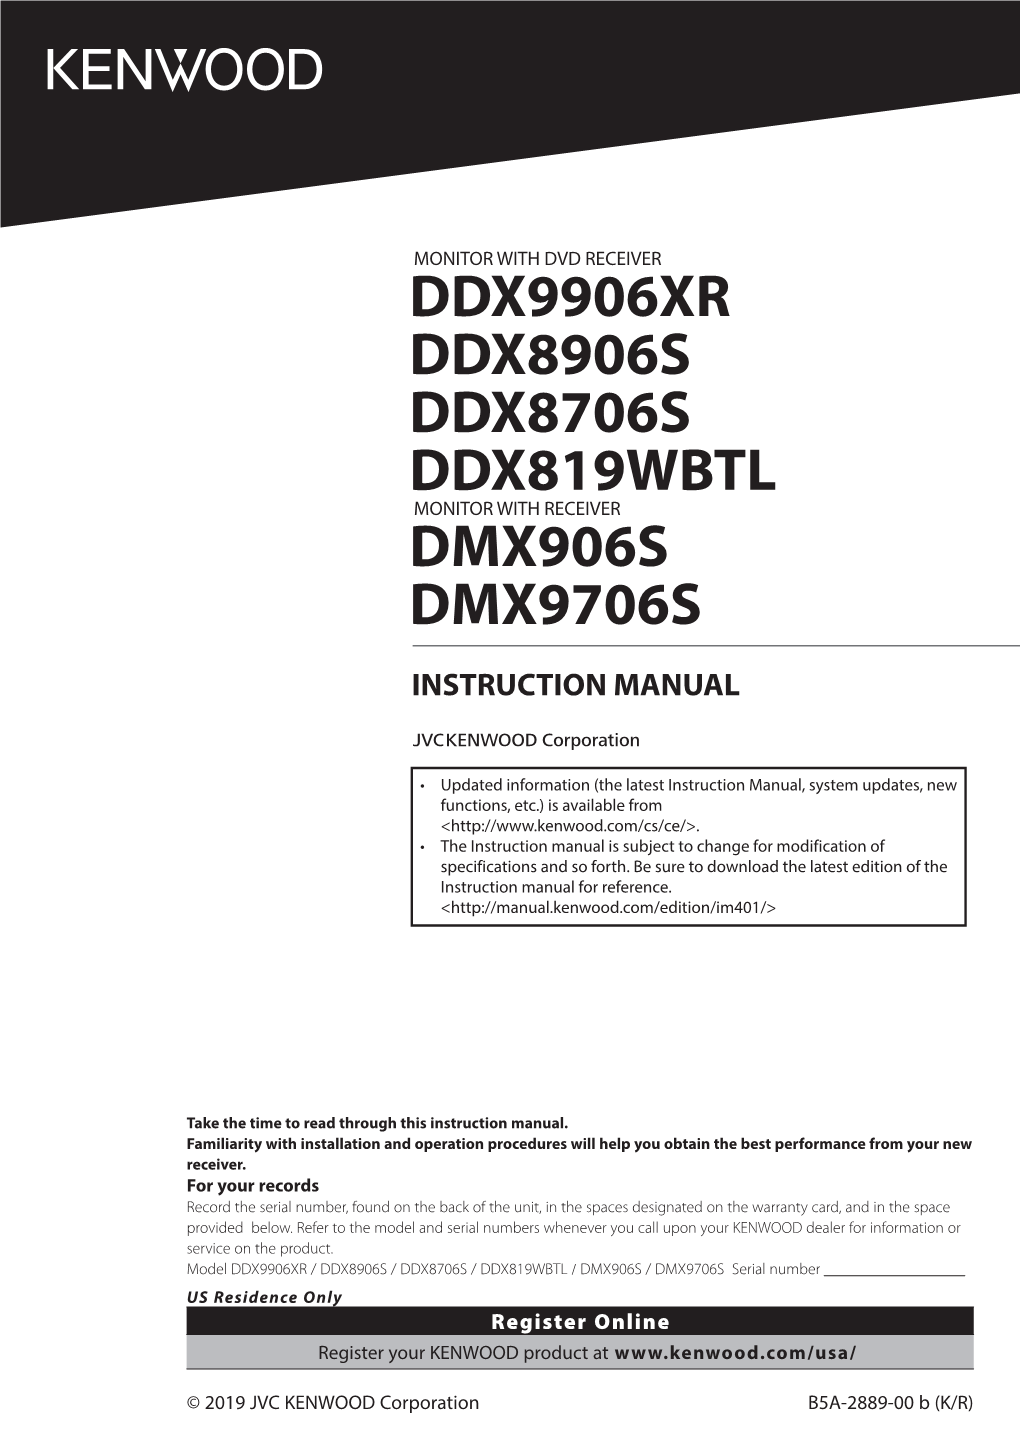 Kenwood Excelon DDX9906XR Owner's Manual